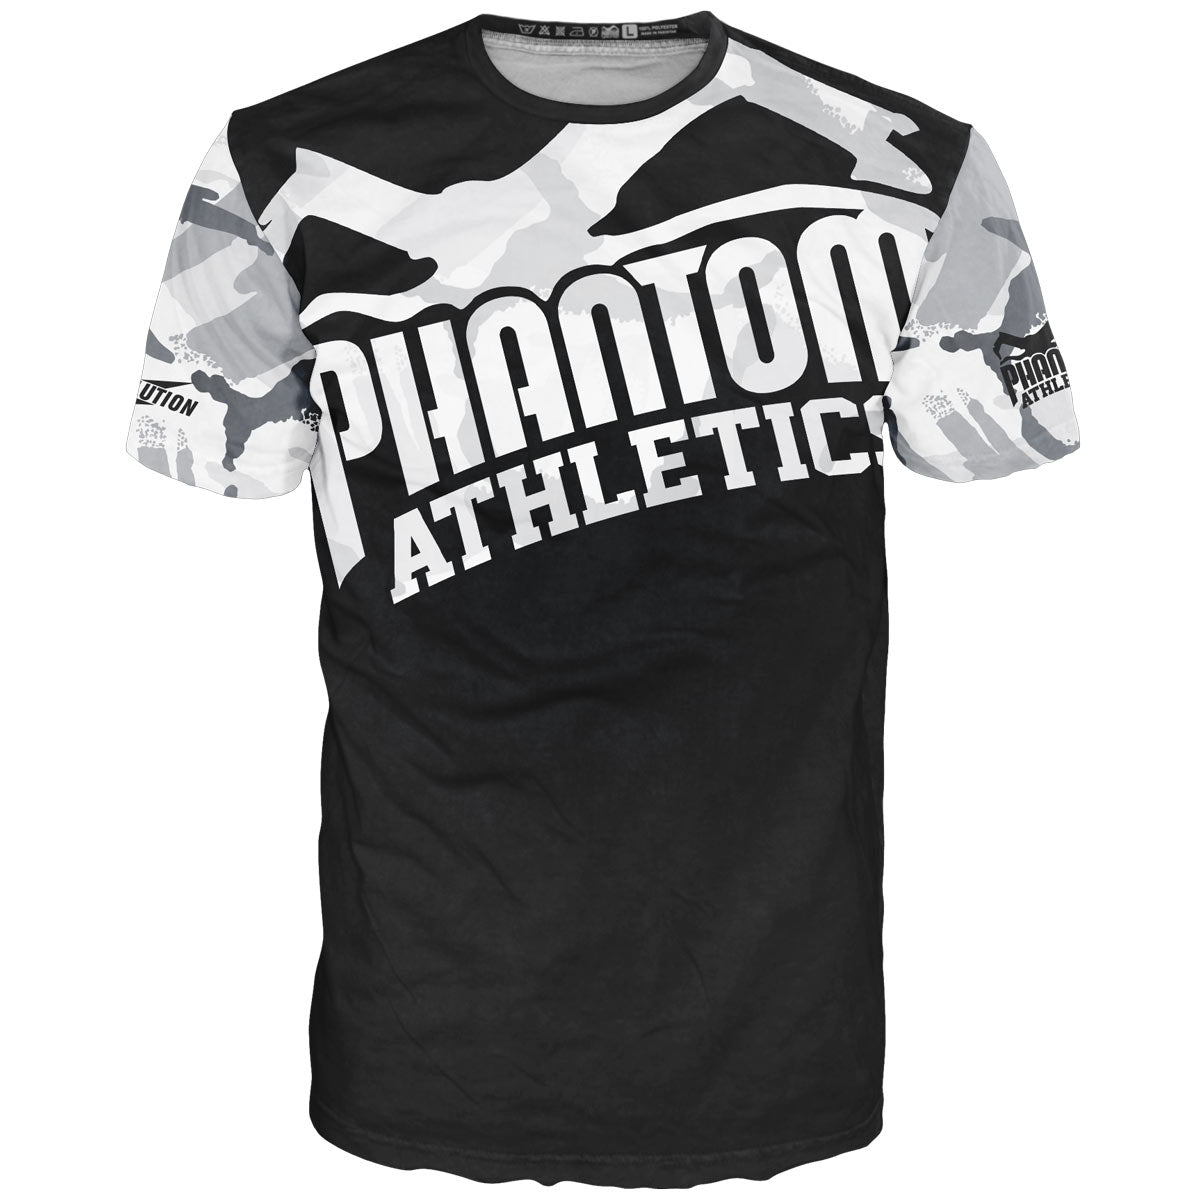 Phantom Кампфспорт ЕВО мајица за обуку у зимском/урбаном цамо изгледу. Прозрачна мајица за тренинг за ММА, Муаи Тхаи, БЈЈ и кик бокс.